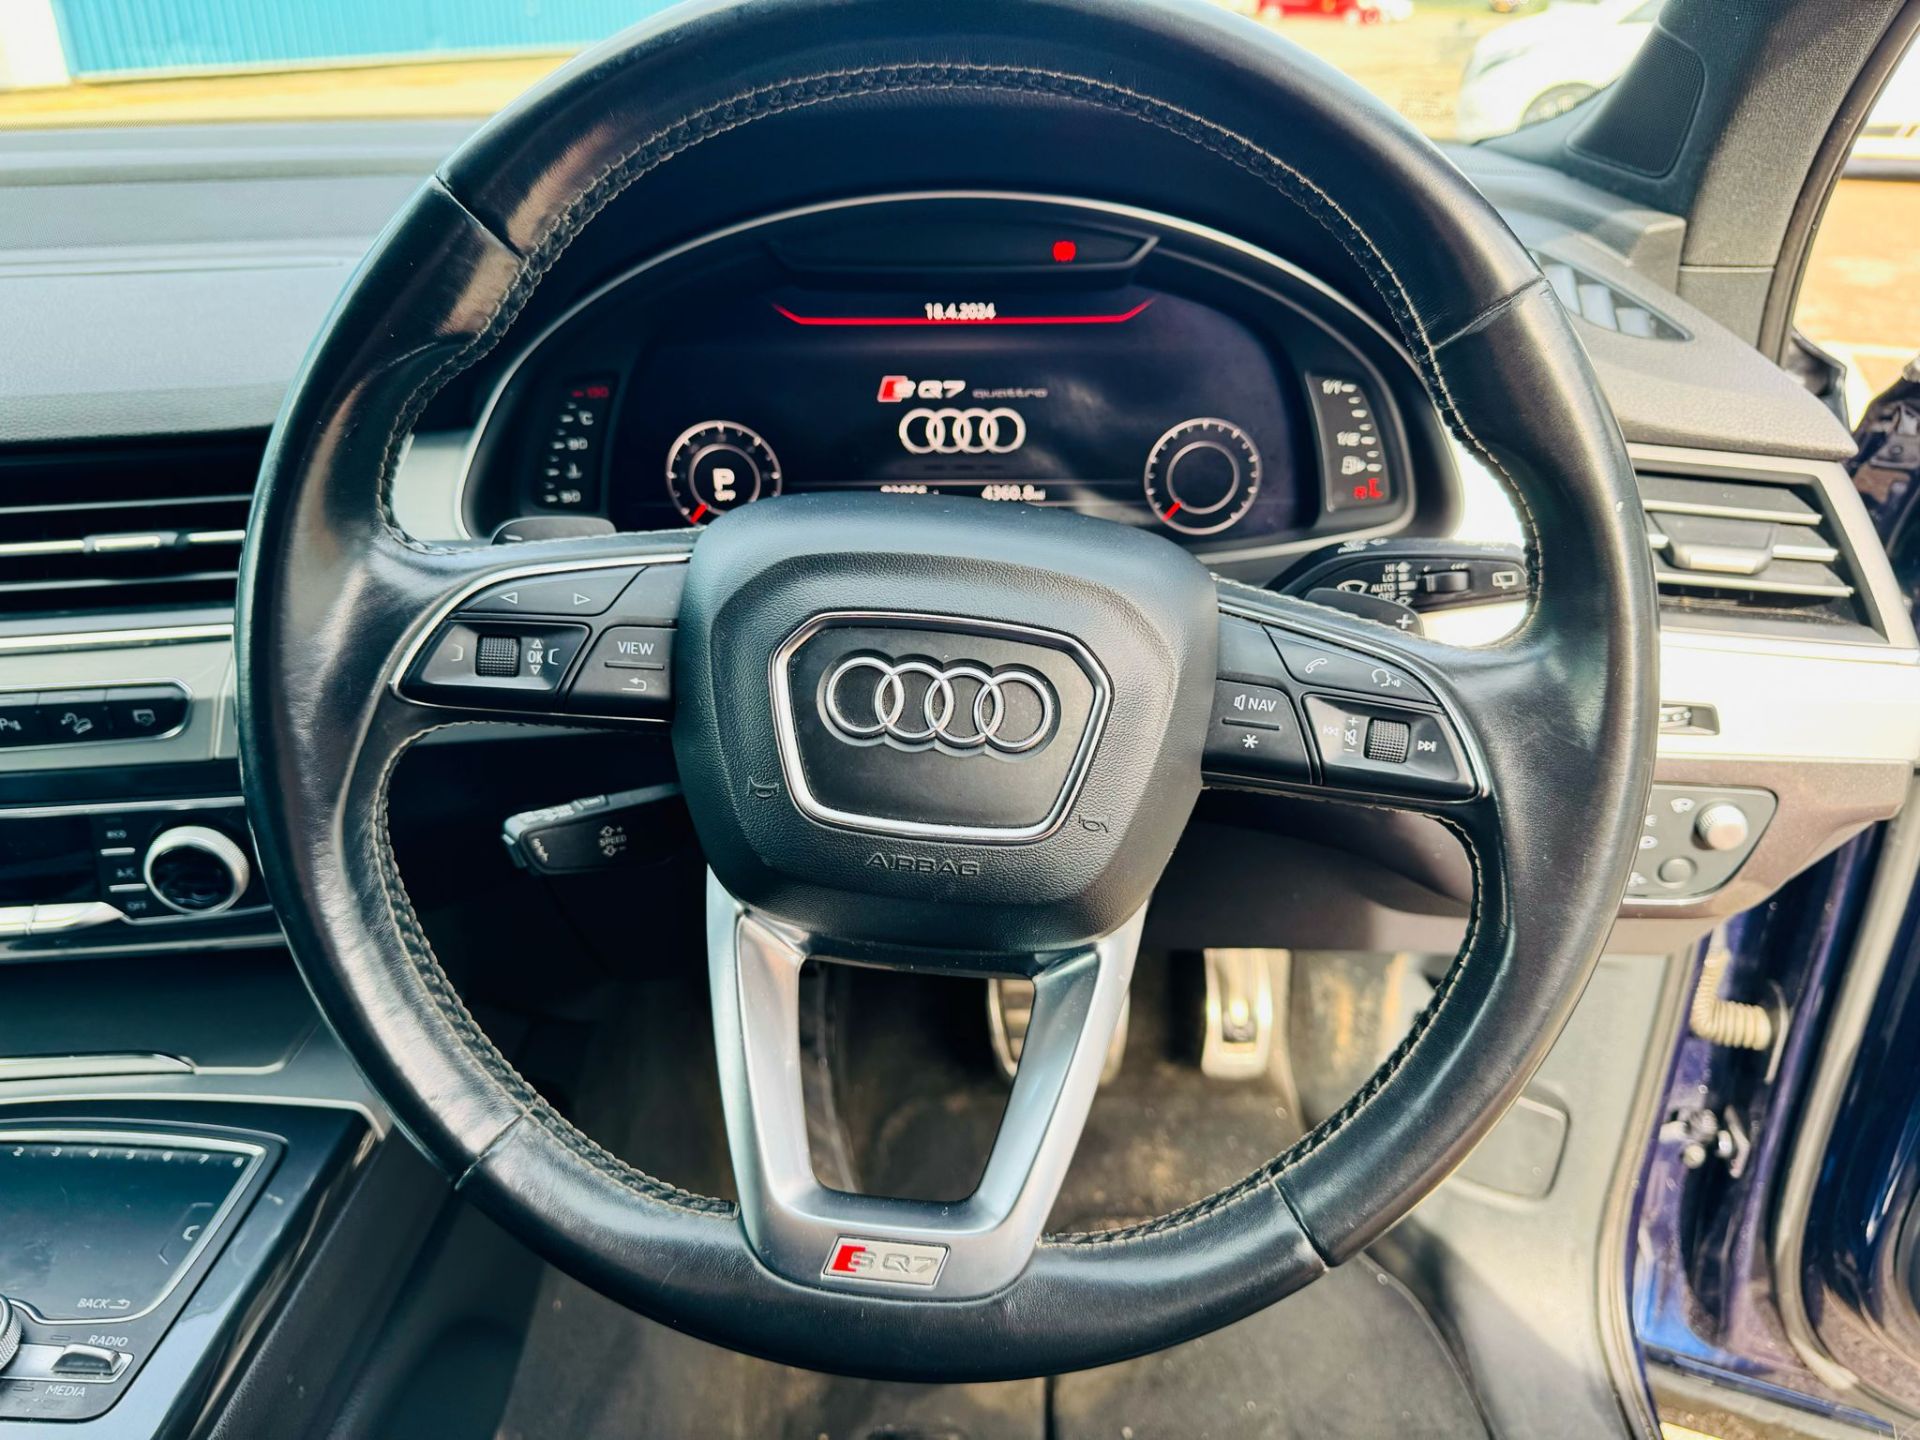 Audi SQ7 4.0TDI V8 Quattro 430BHP "SQ7 EDITION" Auto (7 Seats) 2018 18Reg -Sat Nav -Reversing camera - Image 20 of 38